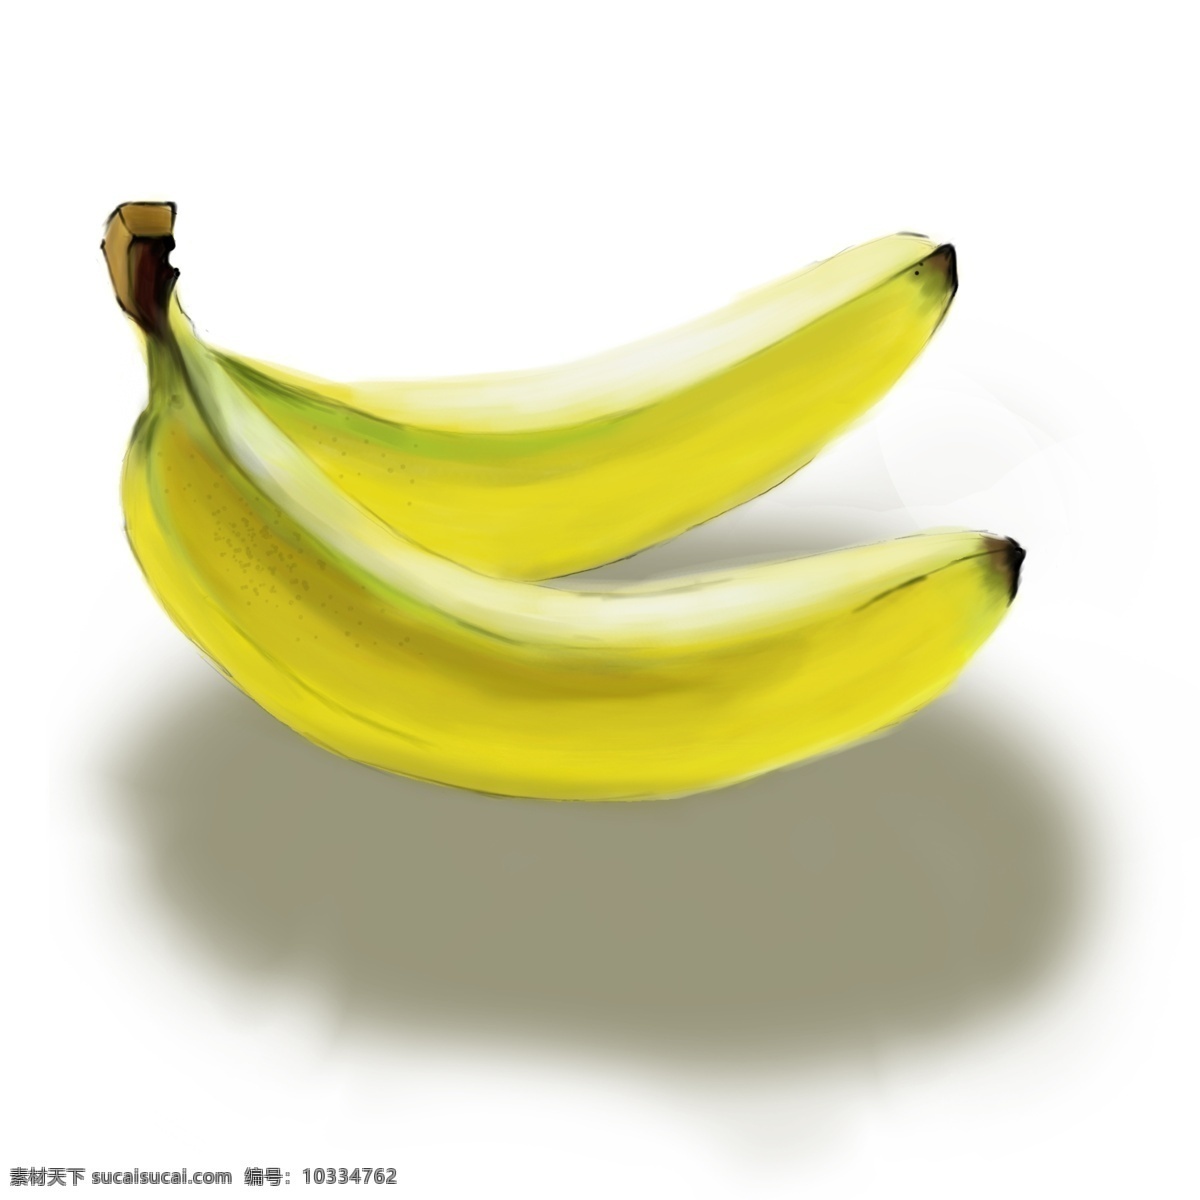 手绘 水果 香蕉 黄色 手绘水果香蕉 黄色香蕉 手绘水果 卡通 美食 餐饮 食品